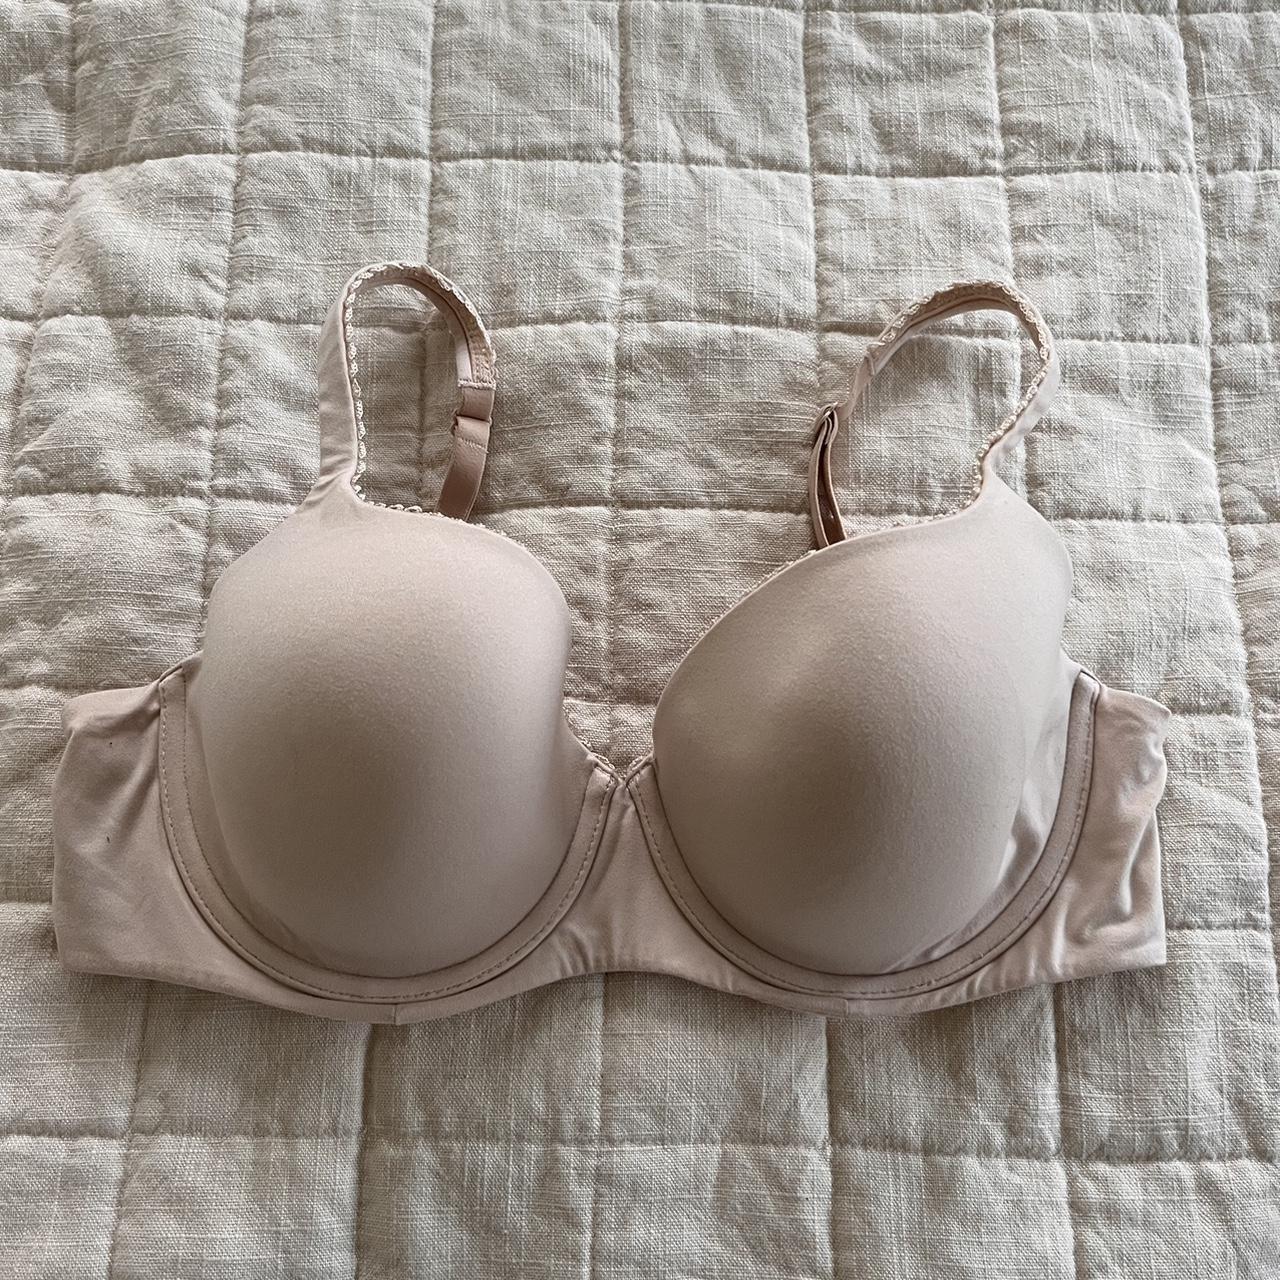 Victoria’s Secret bra size 36D.